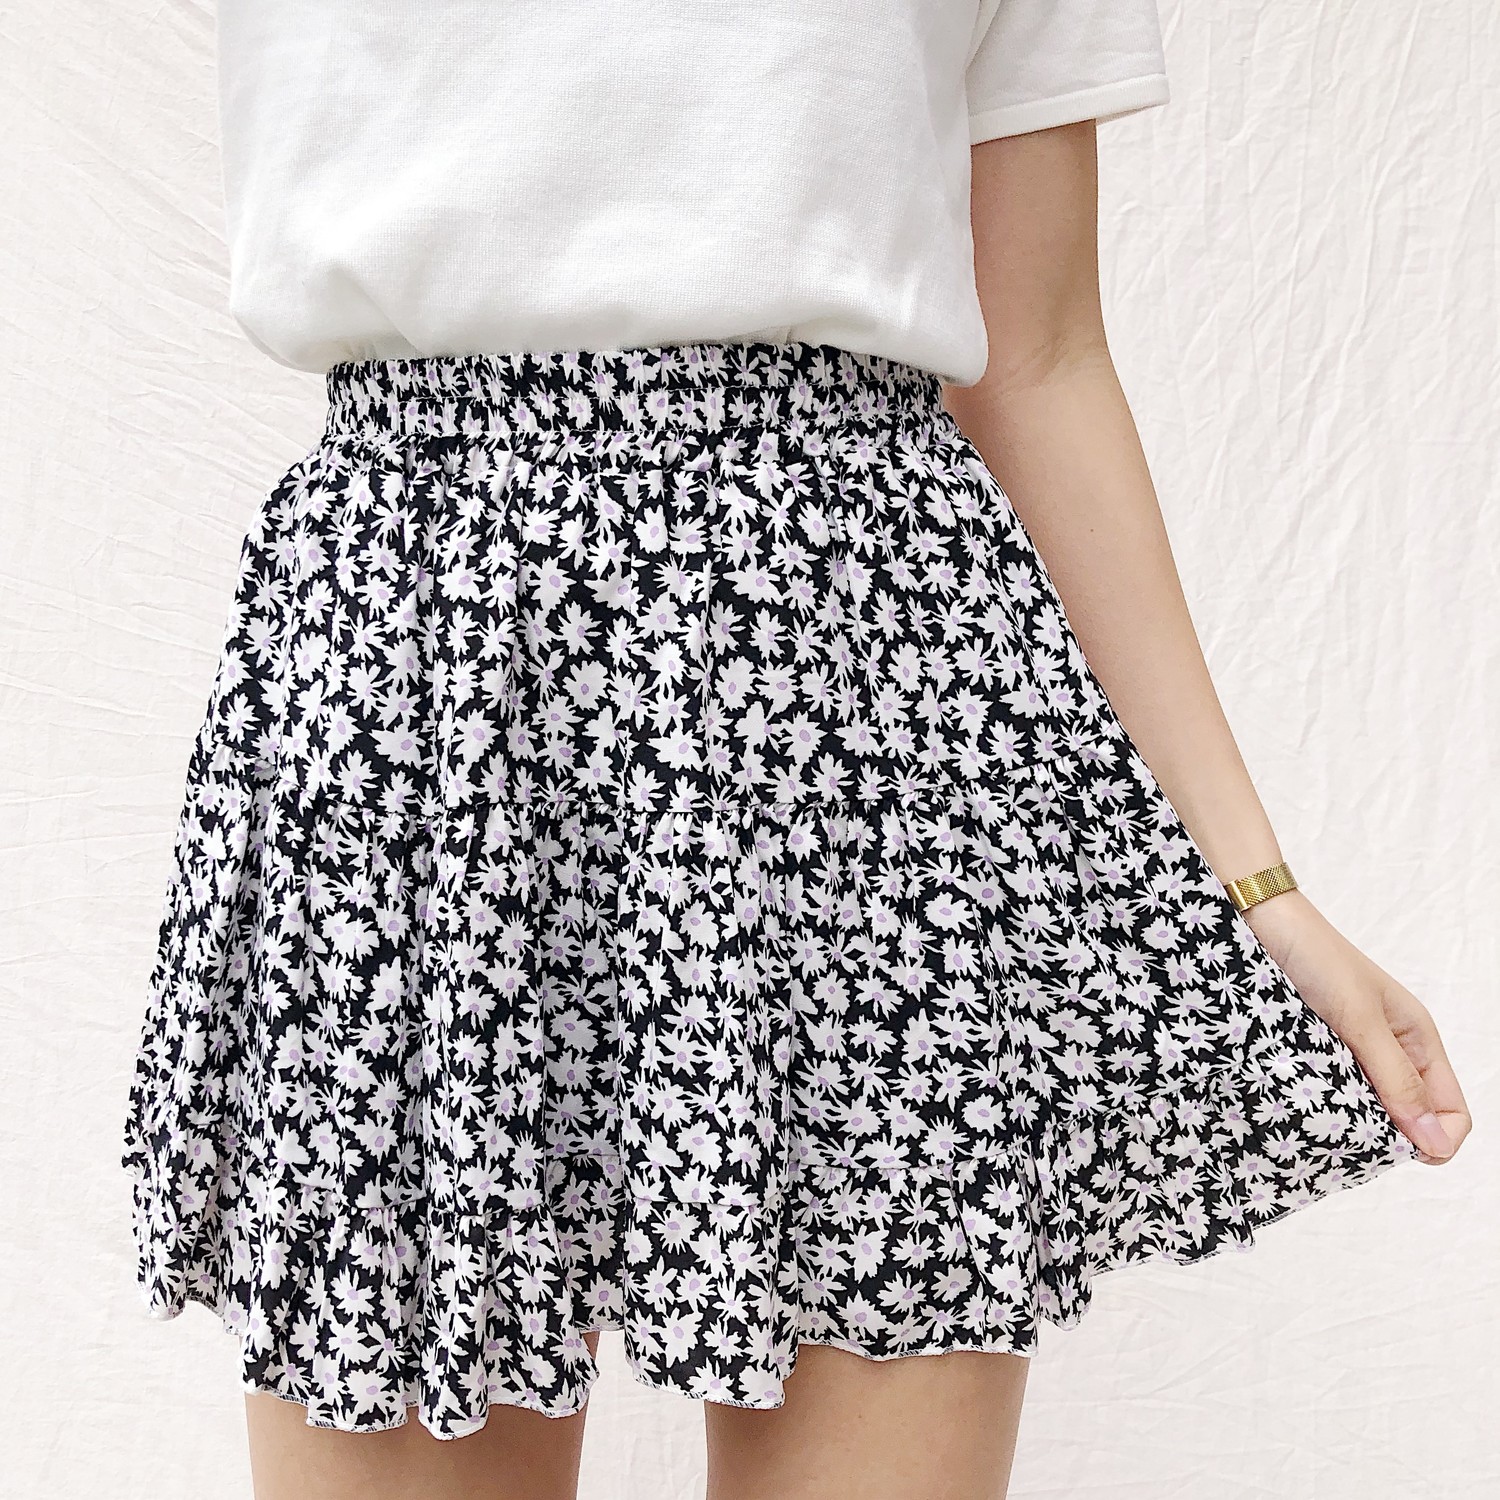 Domina Flower Skirt / Black - Hello My Love